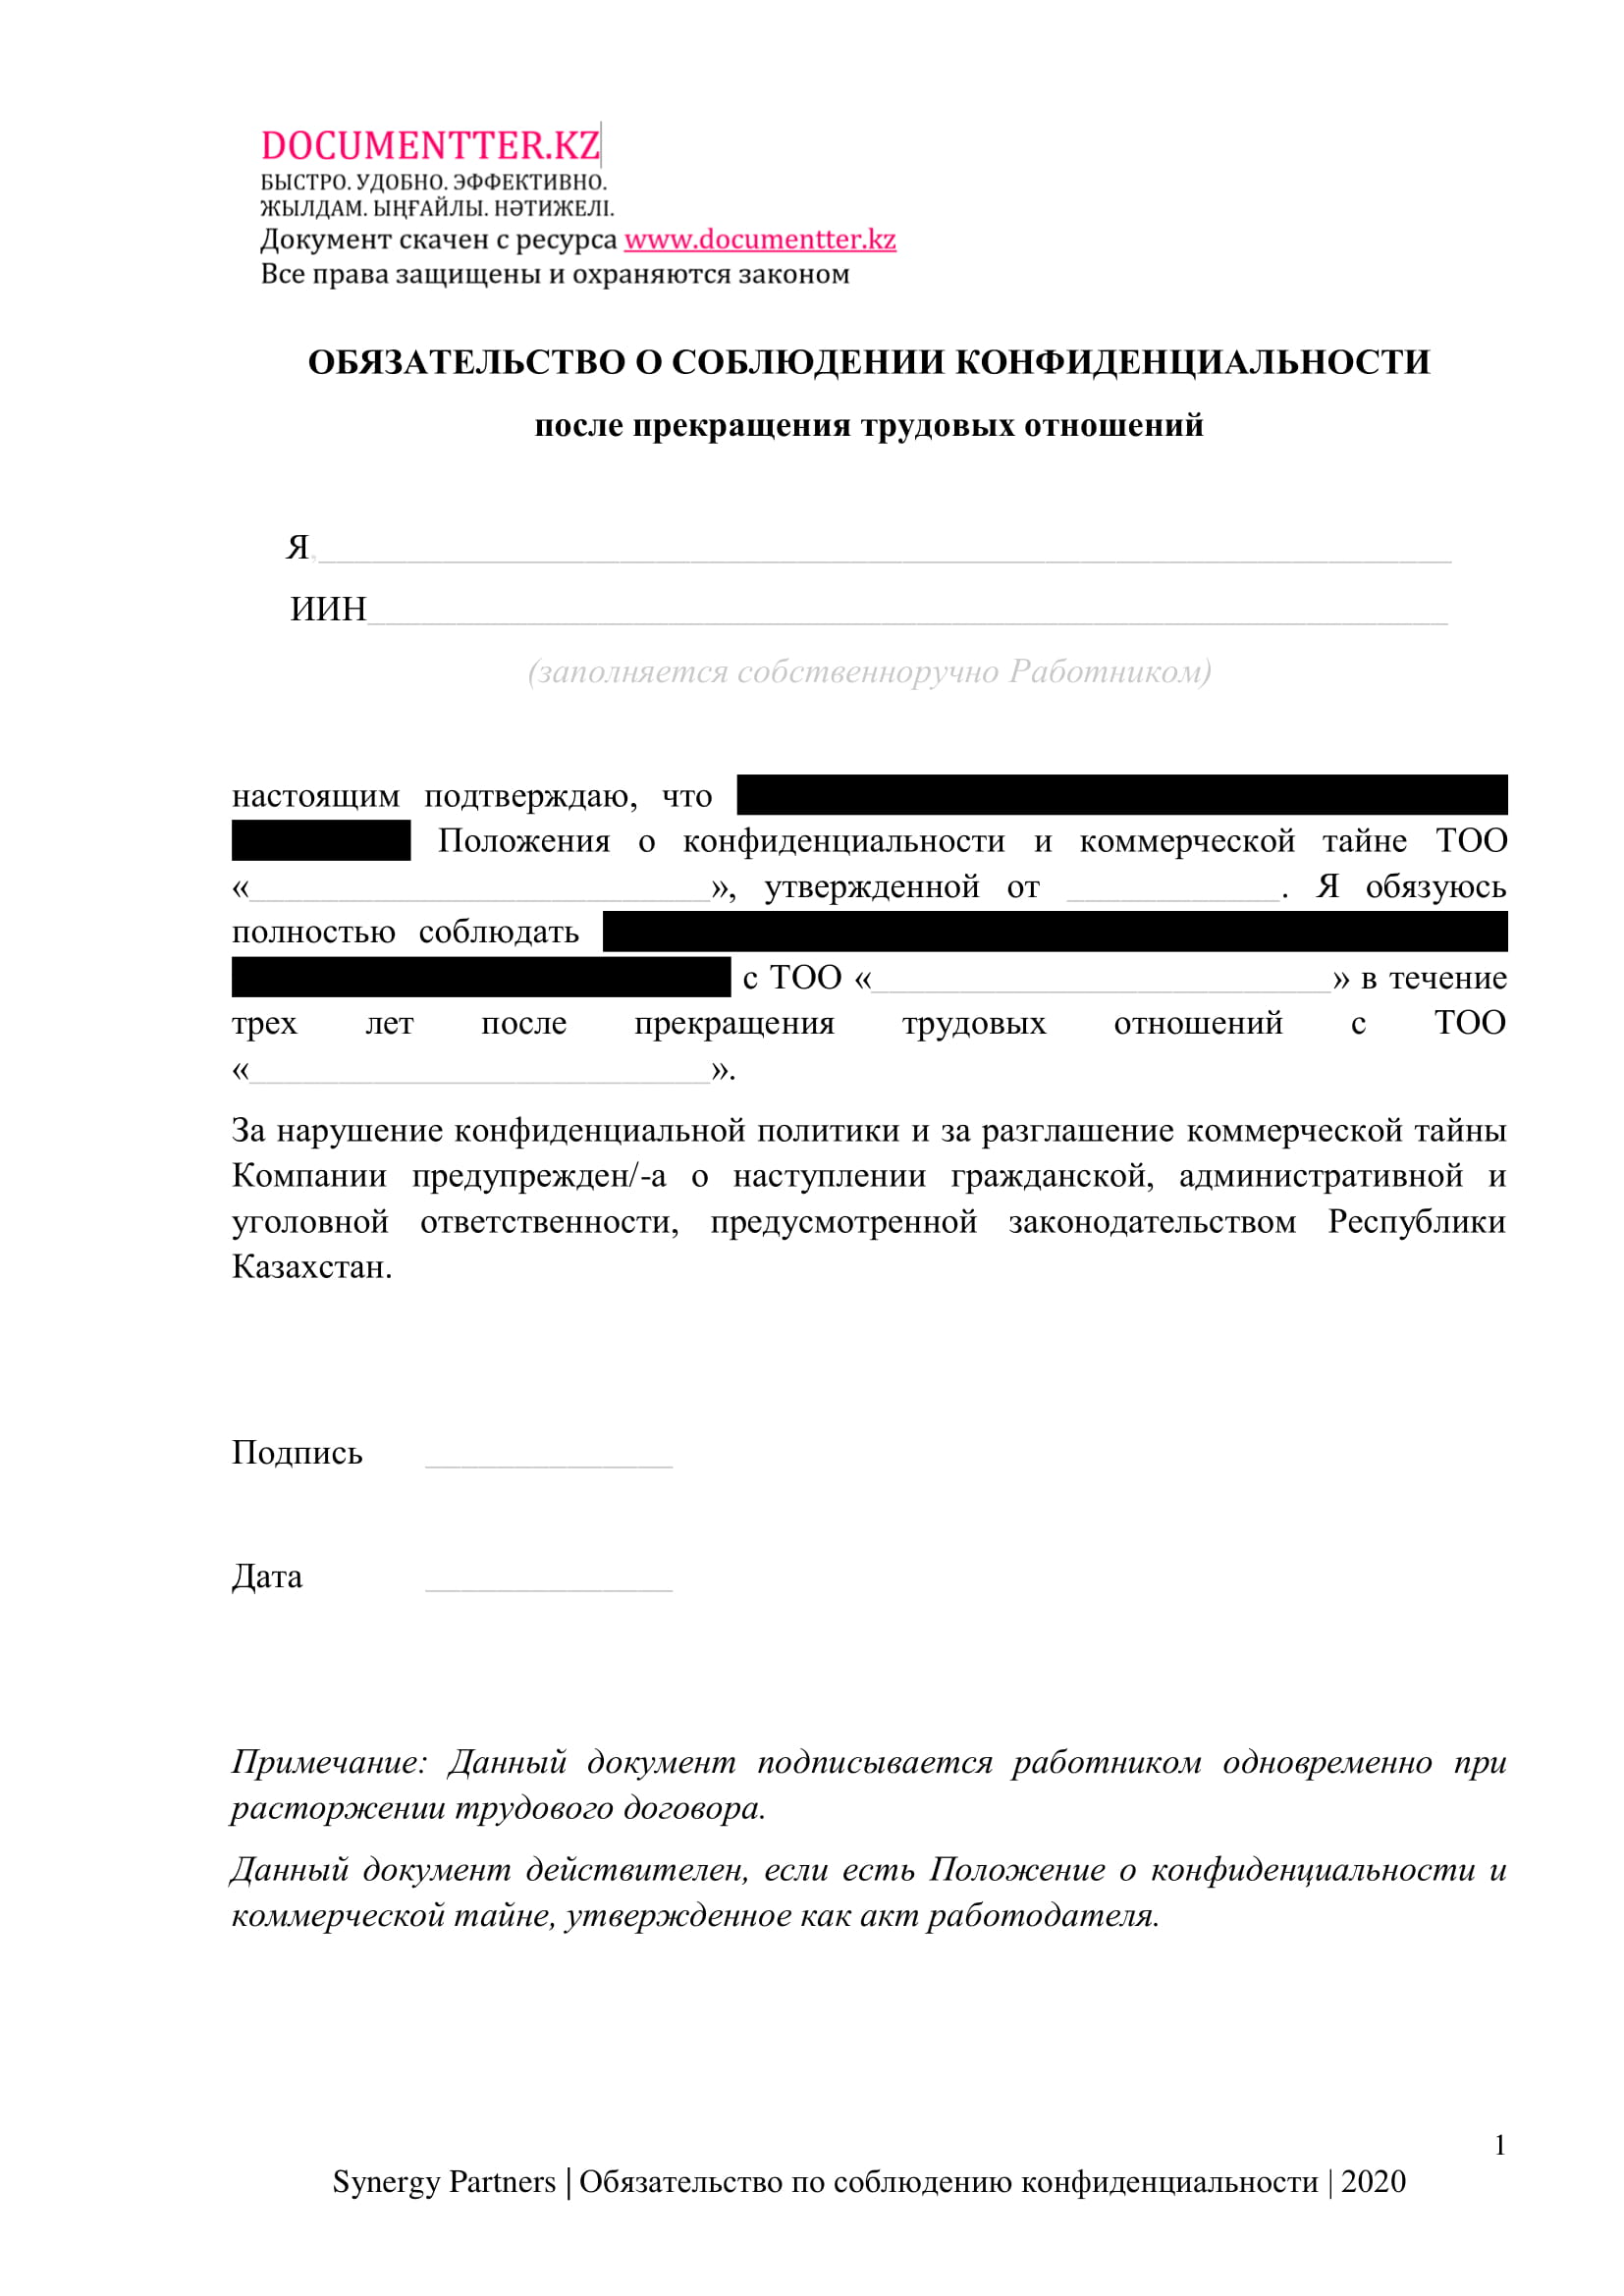 Обязательство по сохранению конфиденциальности после ухода  | documentter.kz в Казахстане 